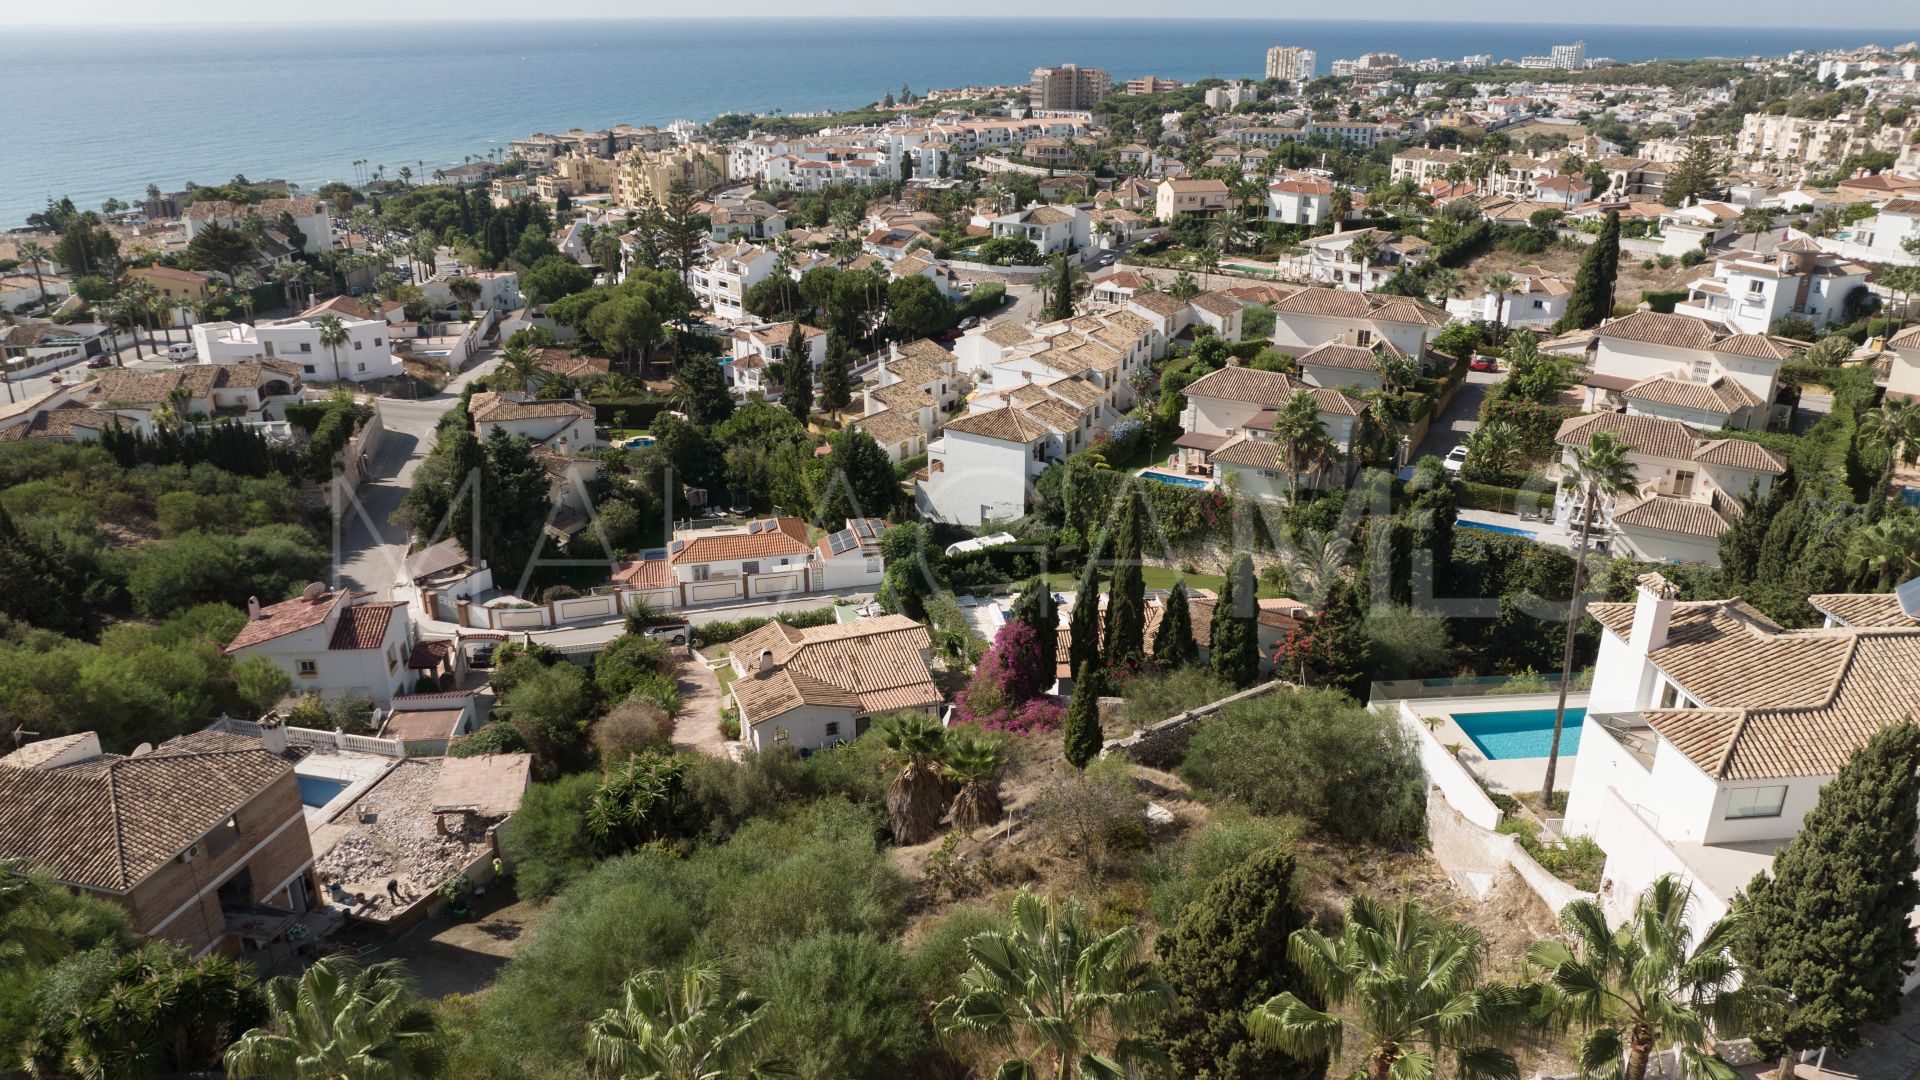 Terrain for sale in Riviera del Sol